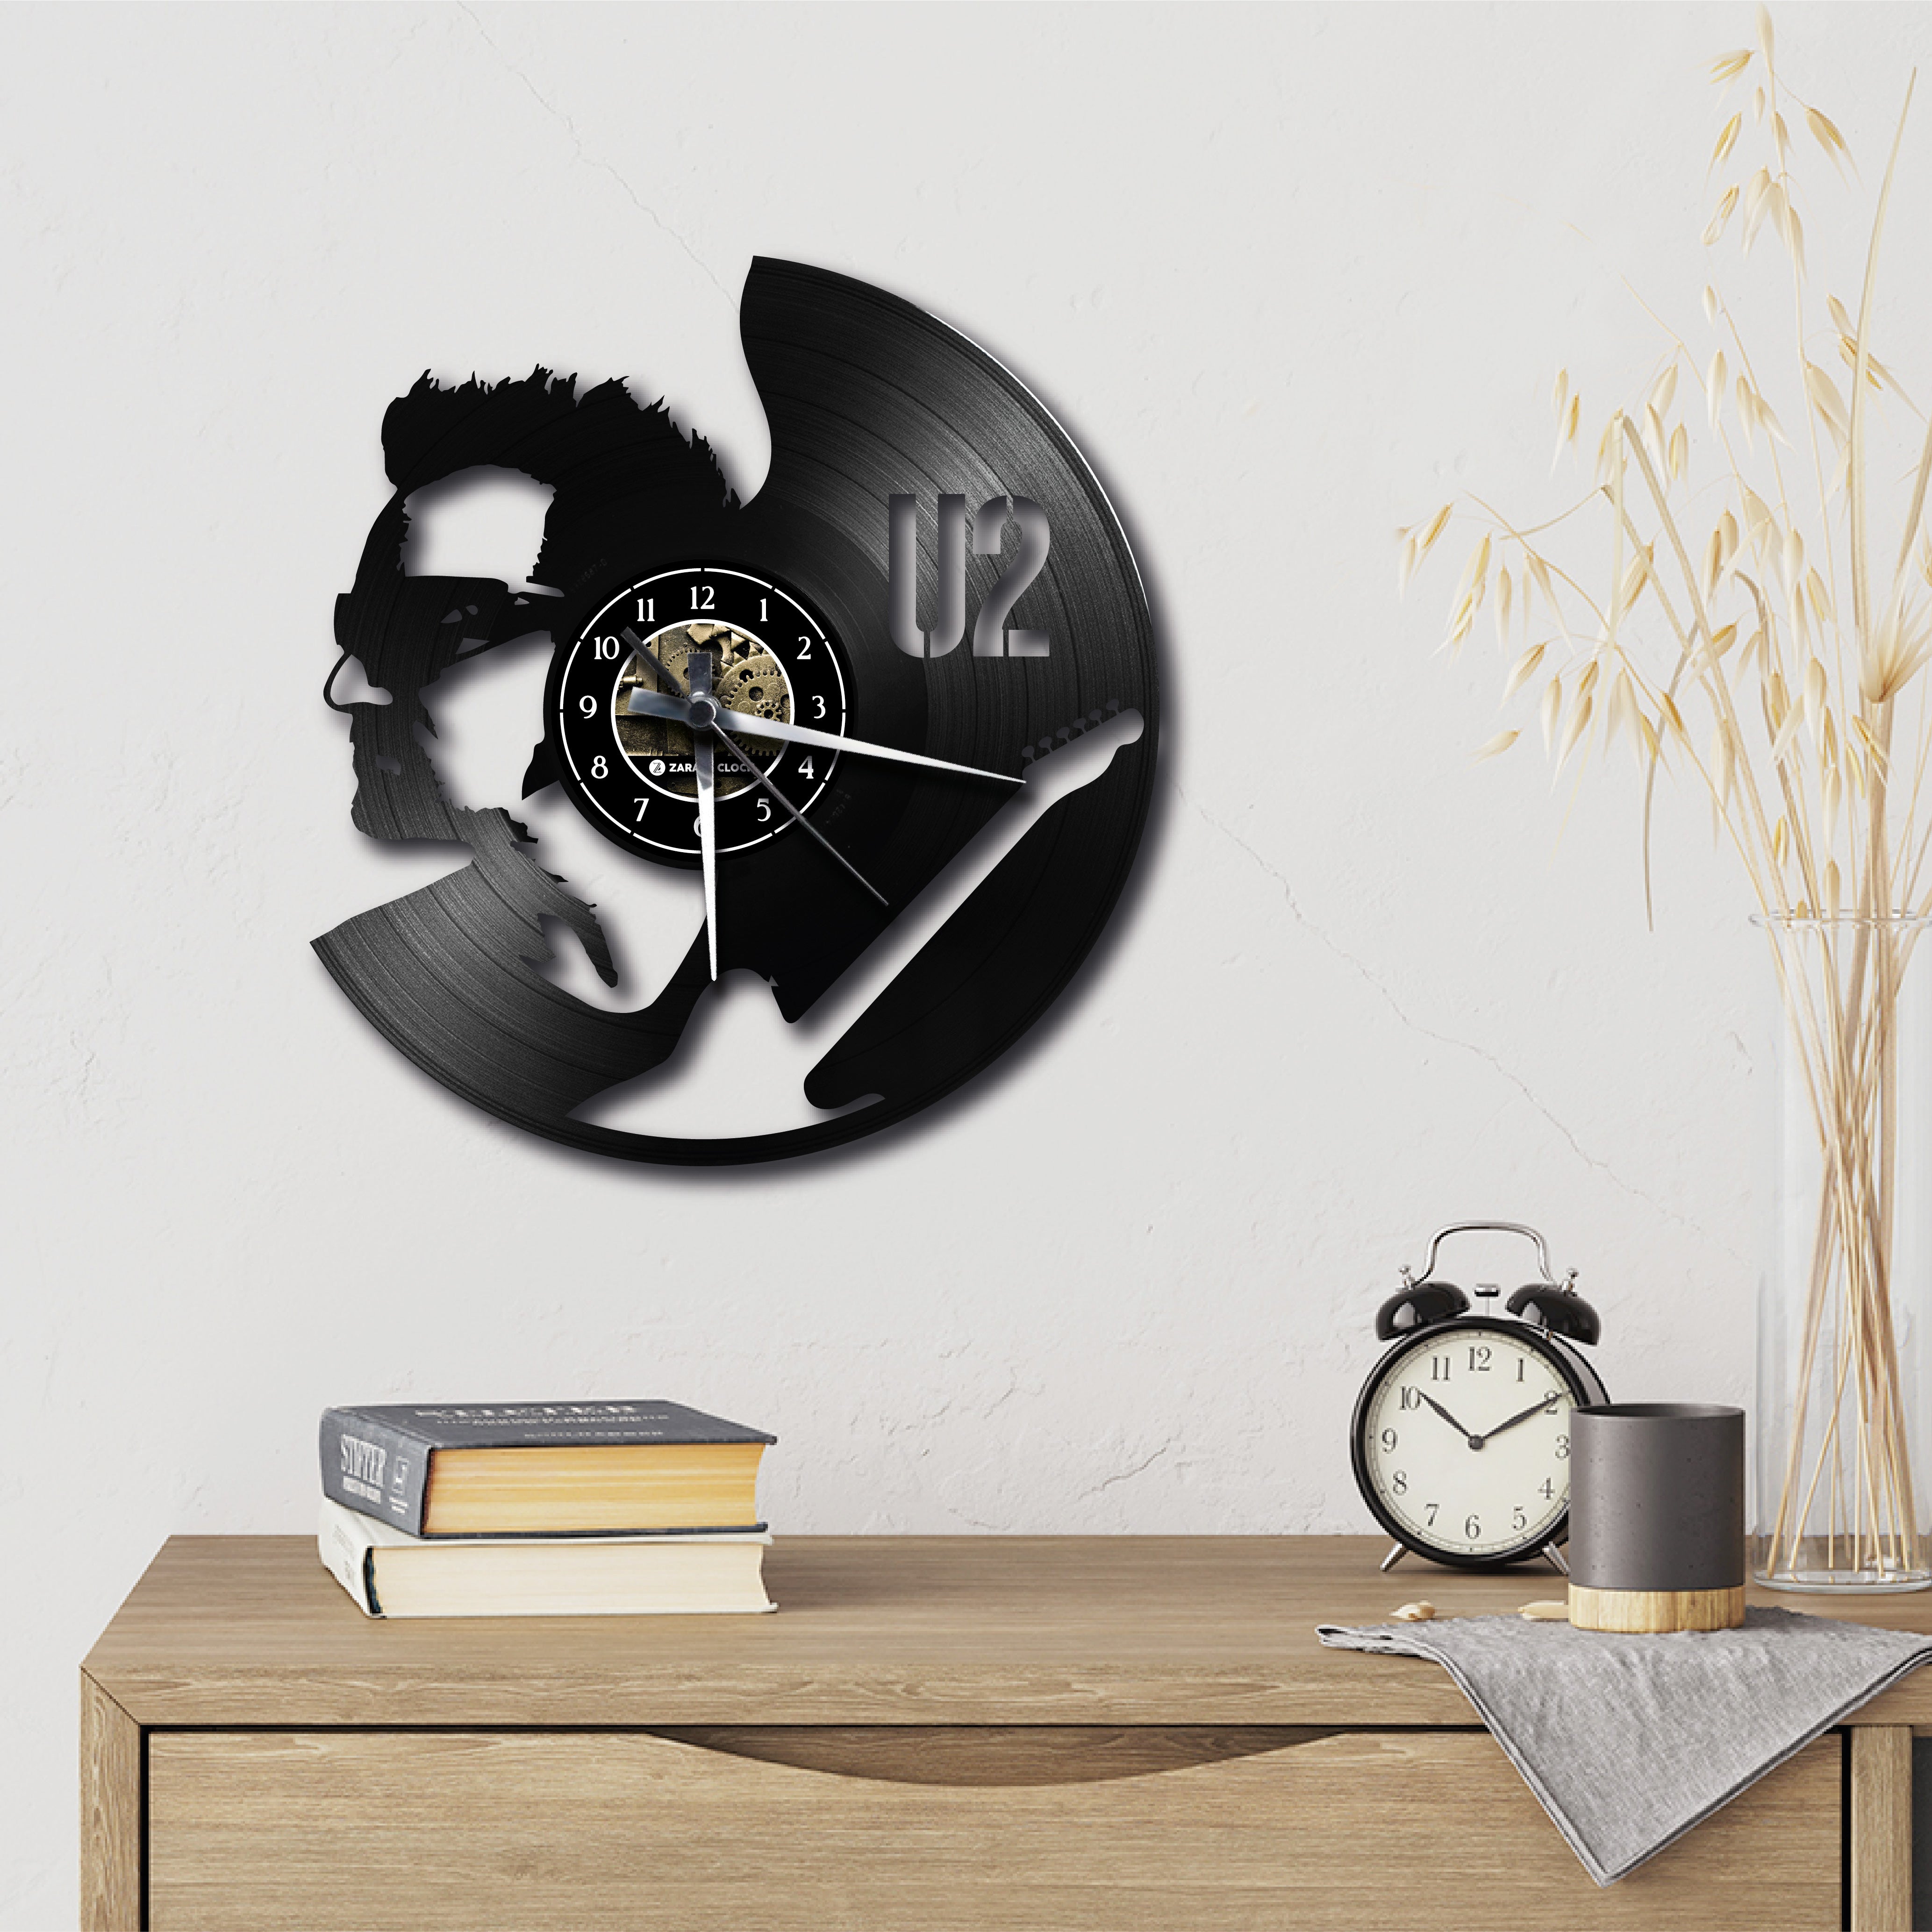 U2 ✦ orologio in vinile